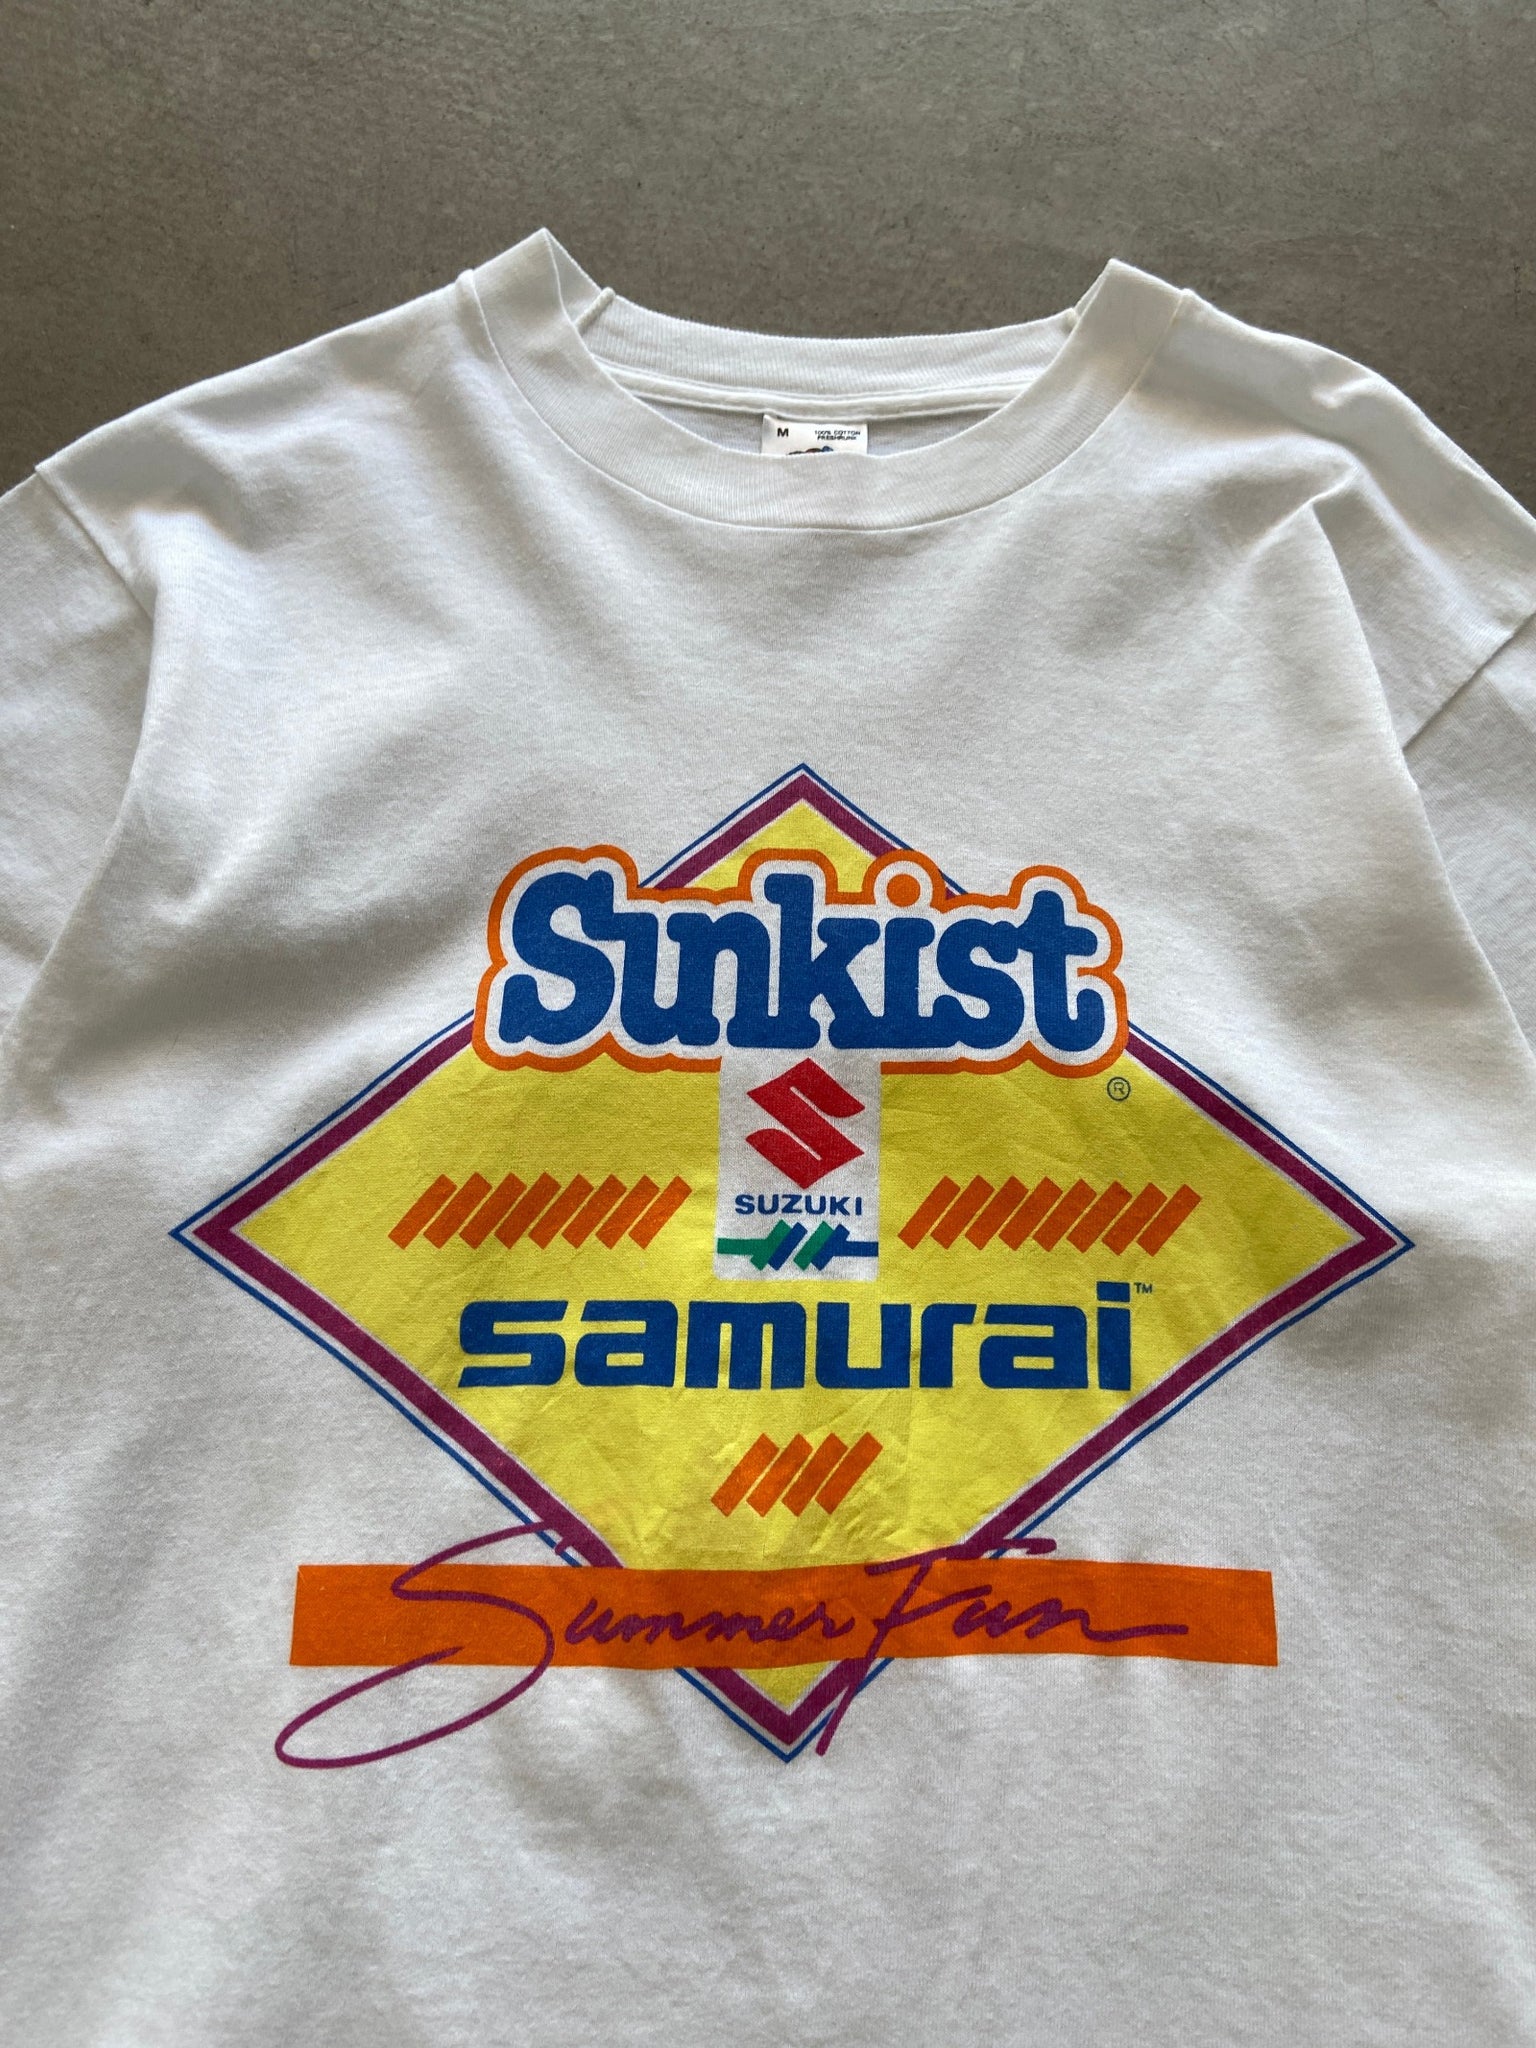 1980's Sunkist Samurai Summer Fun T-Shirt - M